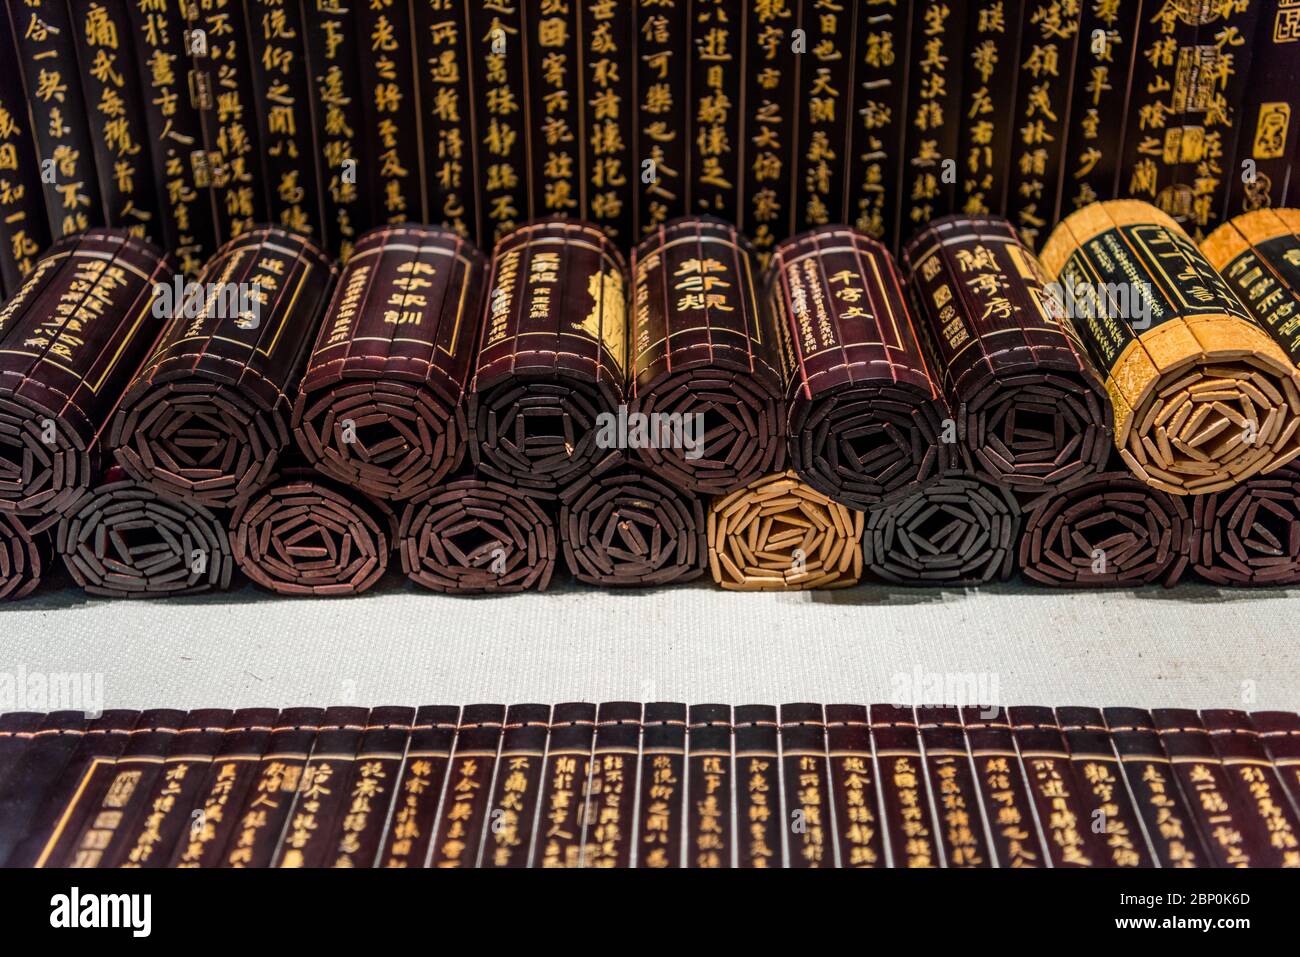 Chinese ancient books, bamboo slips. Stock Photo